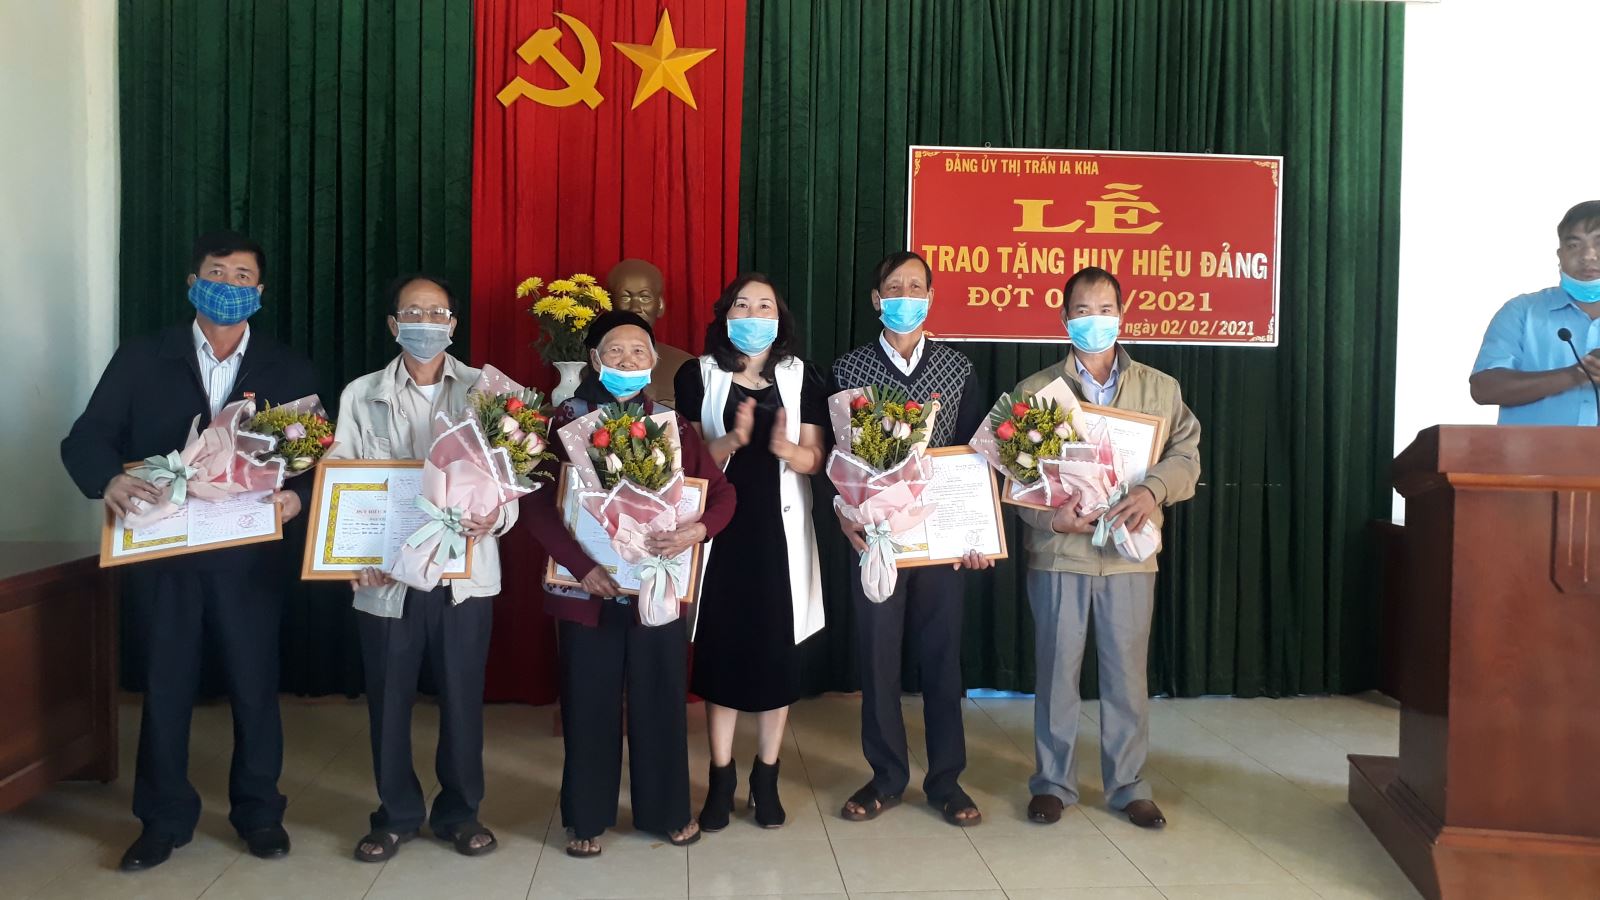 Article Đồng chí Nguyễn Thị Lành trao huy hiệu Đảng cho 5 đảng viên thị trấn Ia Kha.